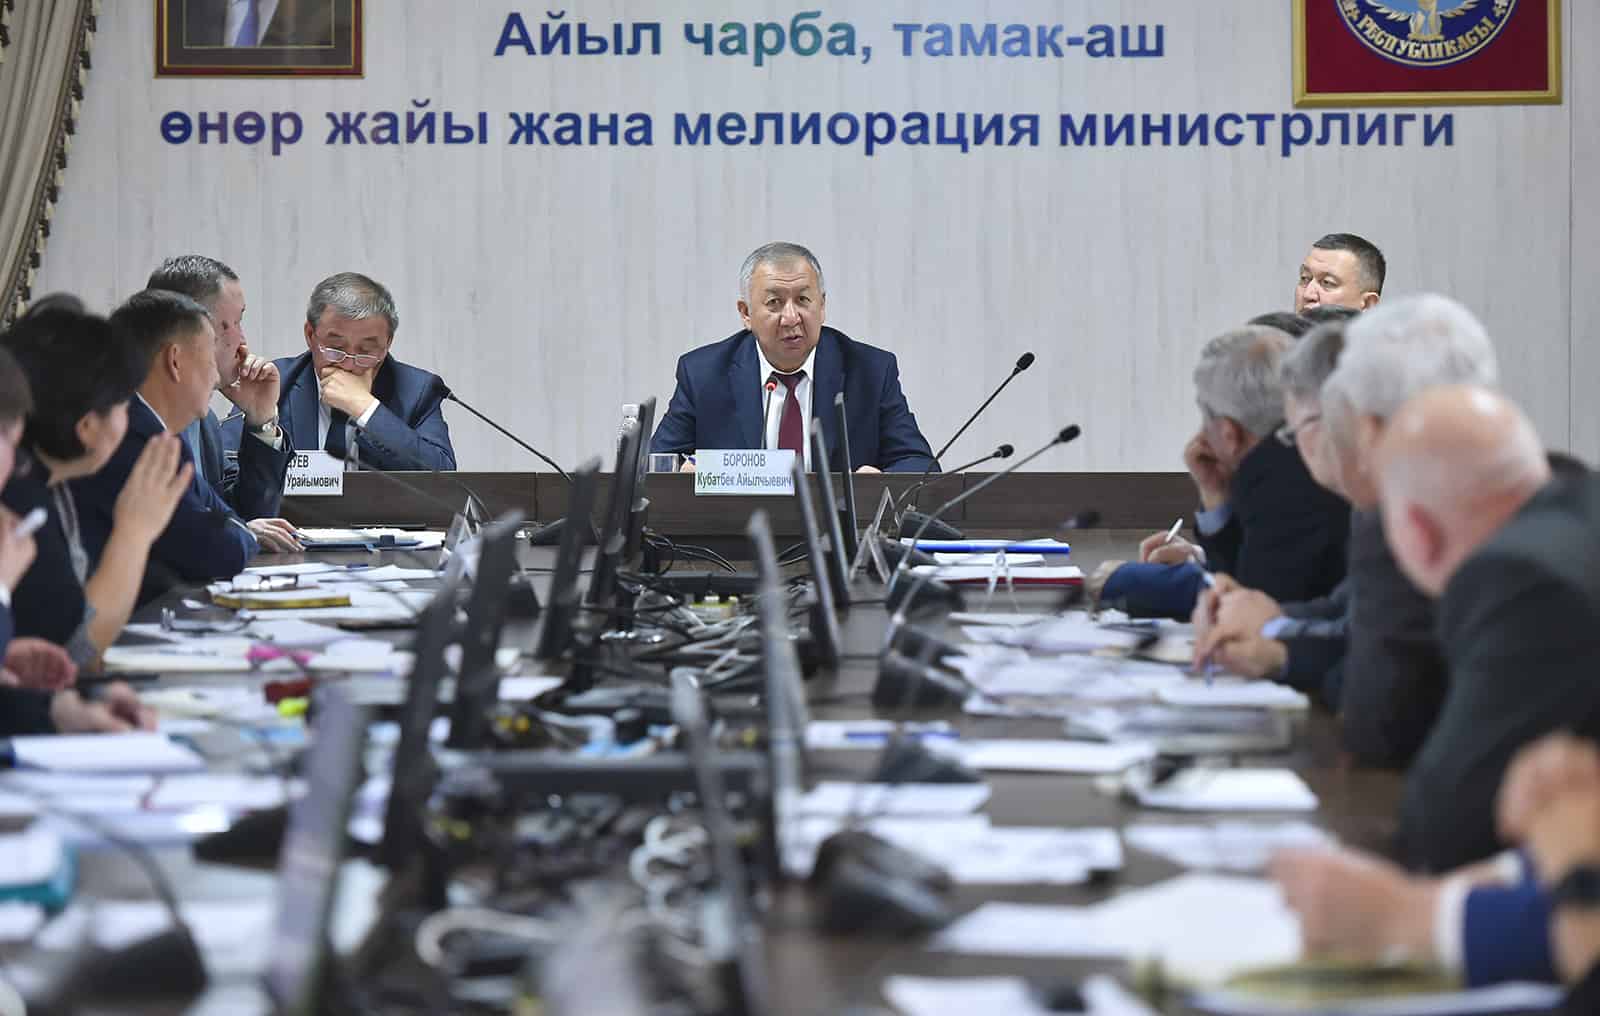 Боронов раскритиковал Минсельхоз: Не зря поднимается вопрос о ликвидации министерства